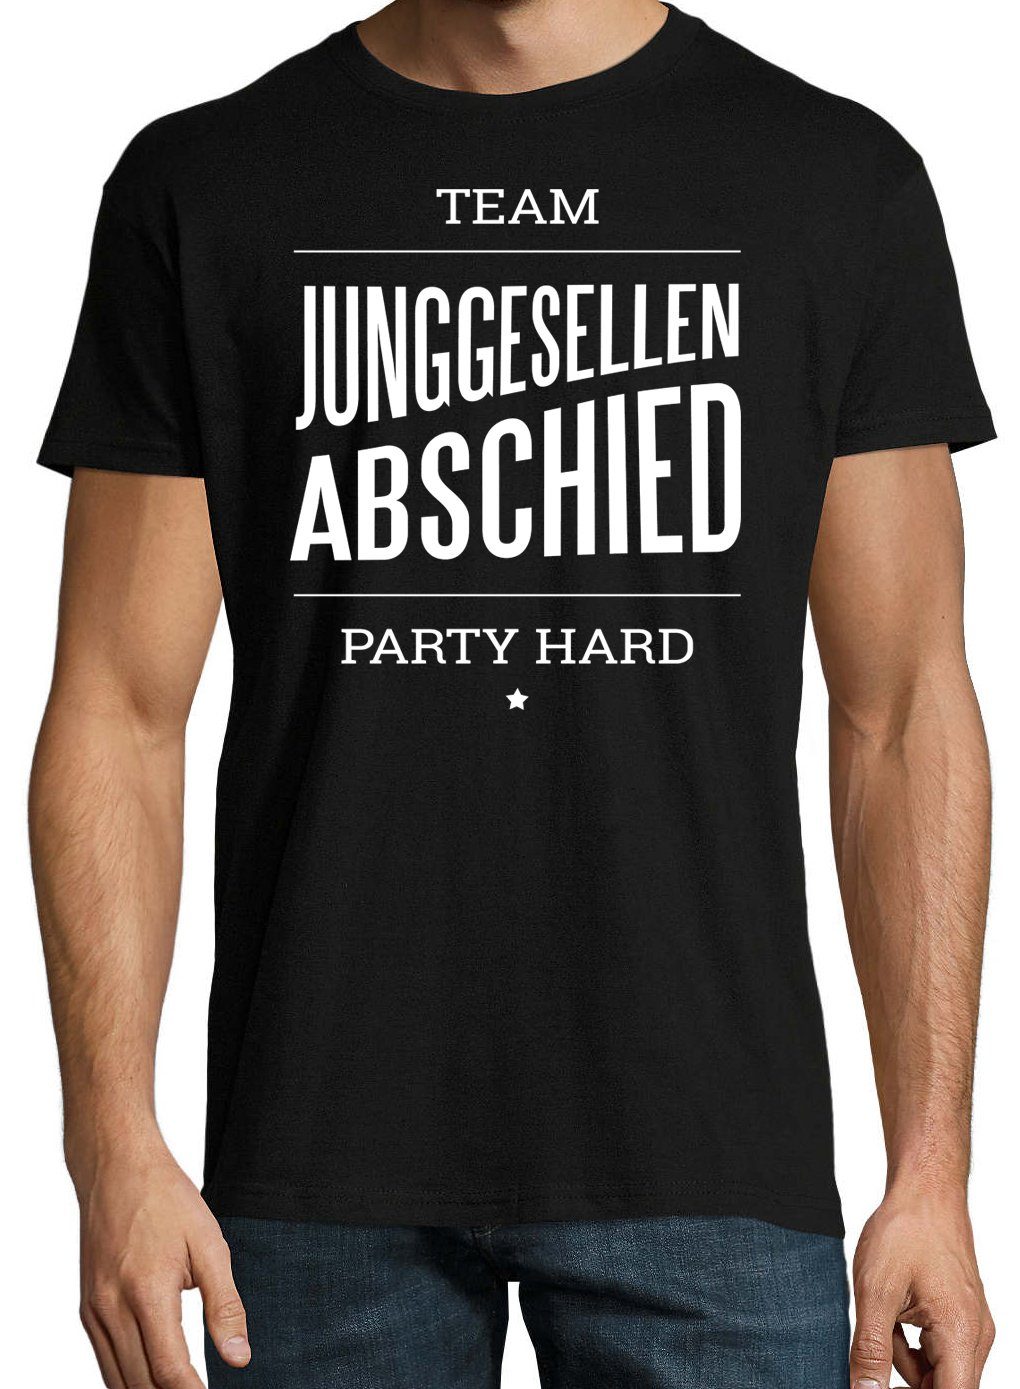 ABSCHIED Herren T-Shirt TEAM Schwarz HARD im Fun-Look JUNGGESELLEN Shirt Youth Designz PARTY